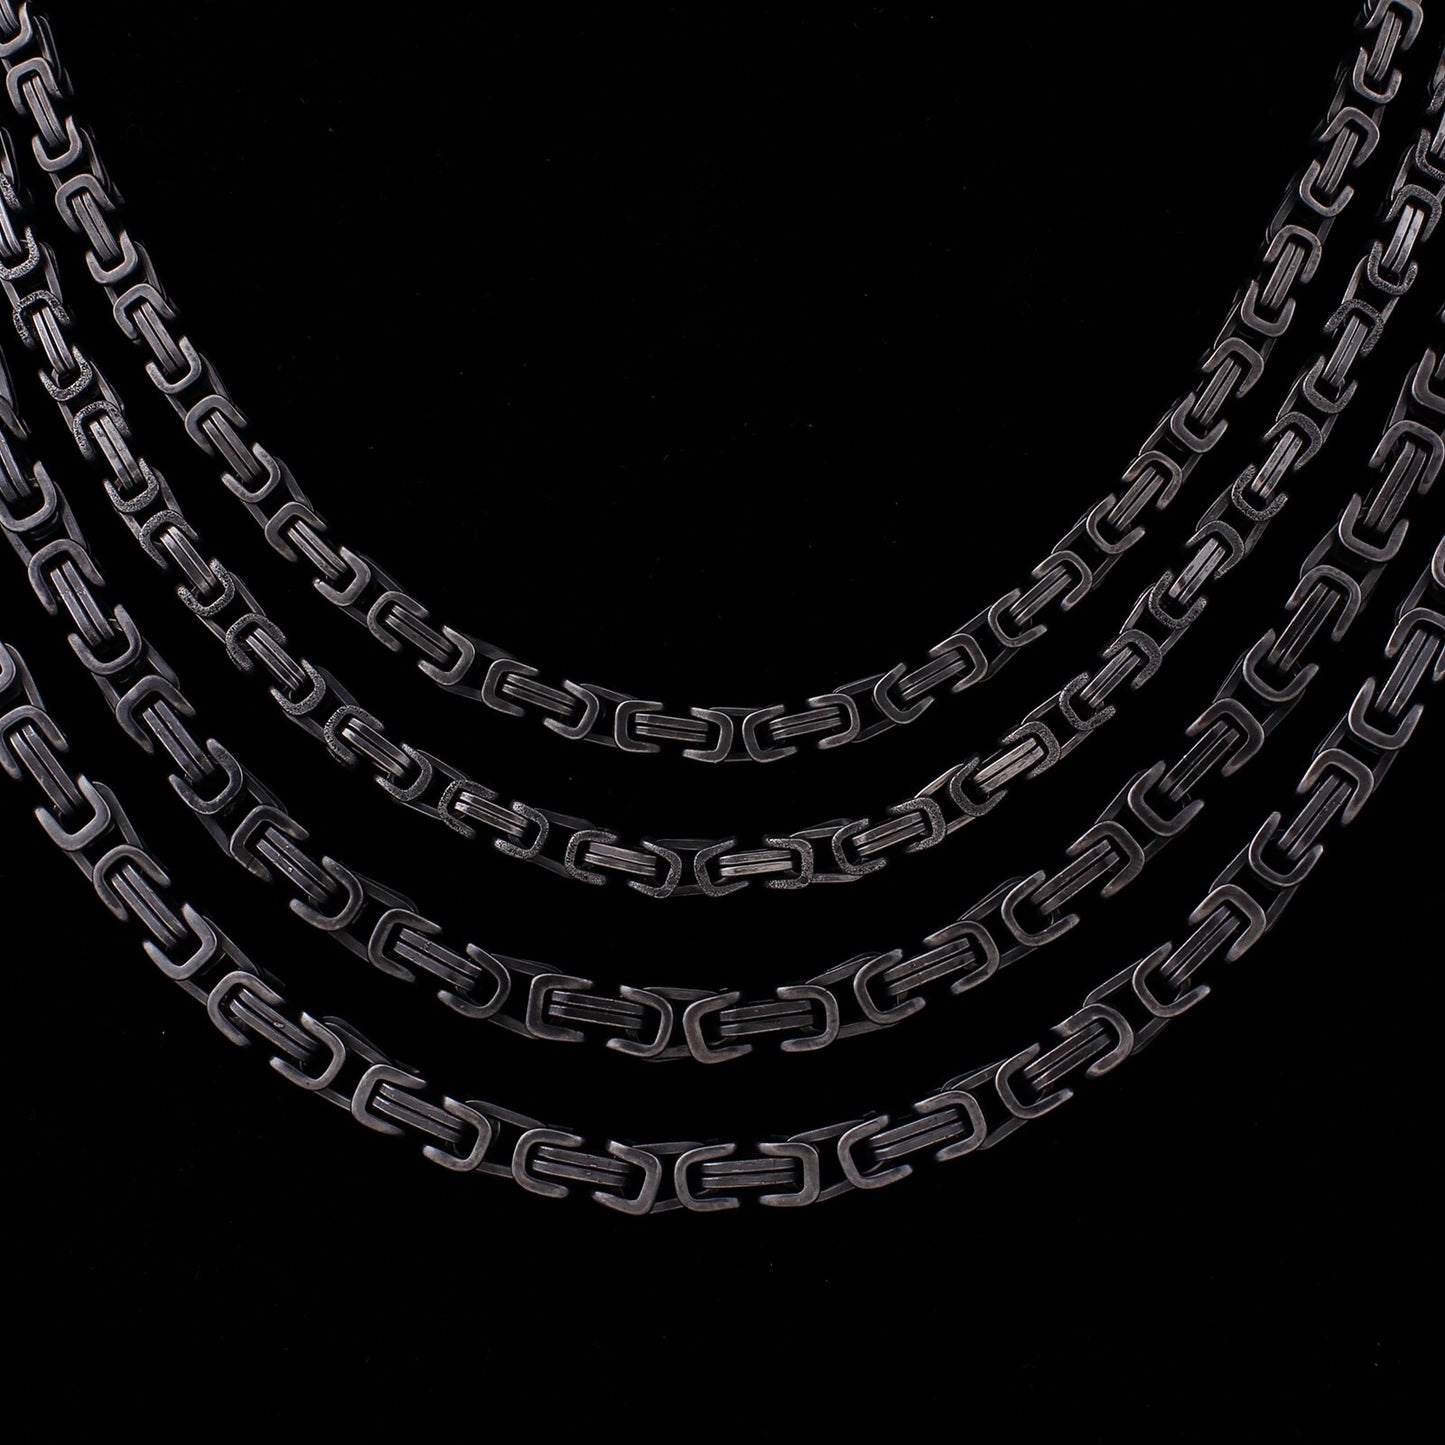 Square Box Matte Necklace Chain